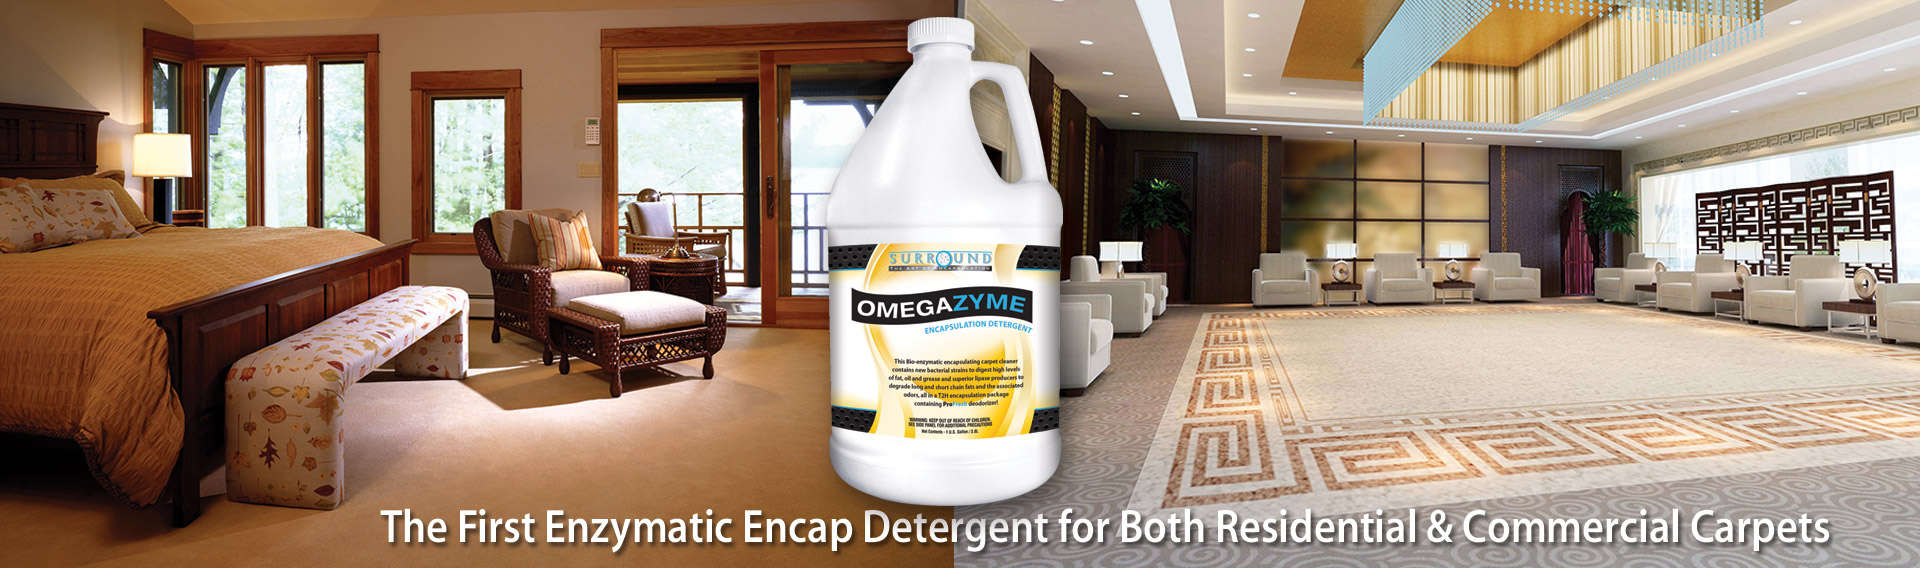 Omegazyme Enzymatic Encapsulant Detergent Carpet Cleaning Encap Supplies Bonnet Pro Llc